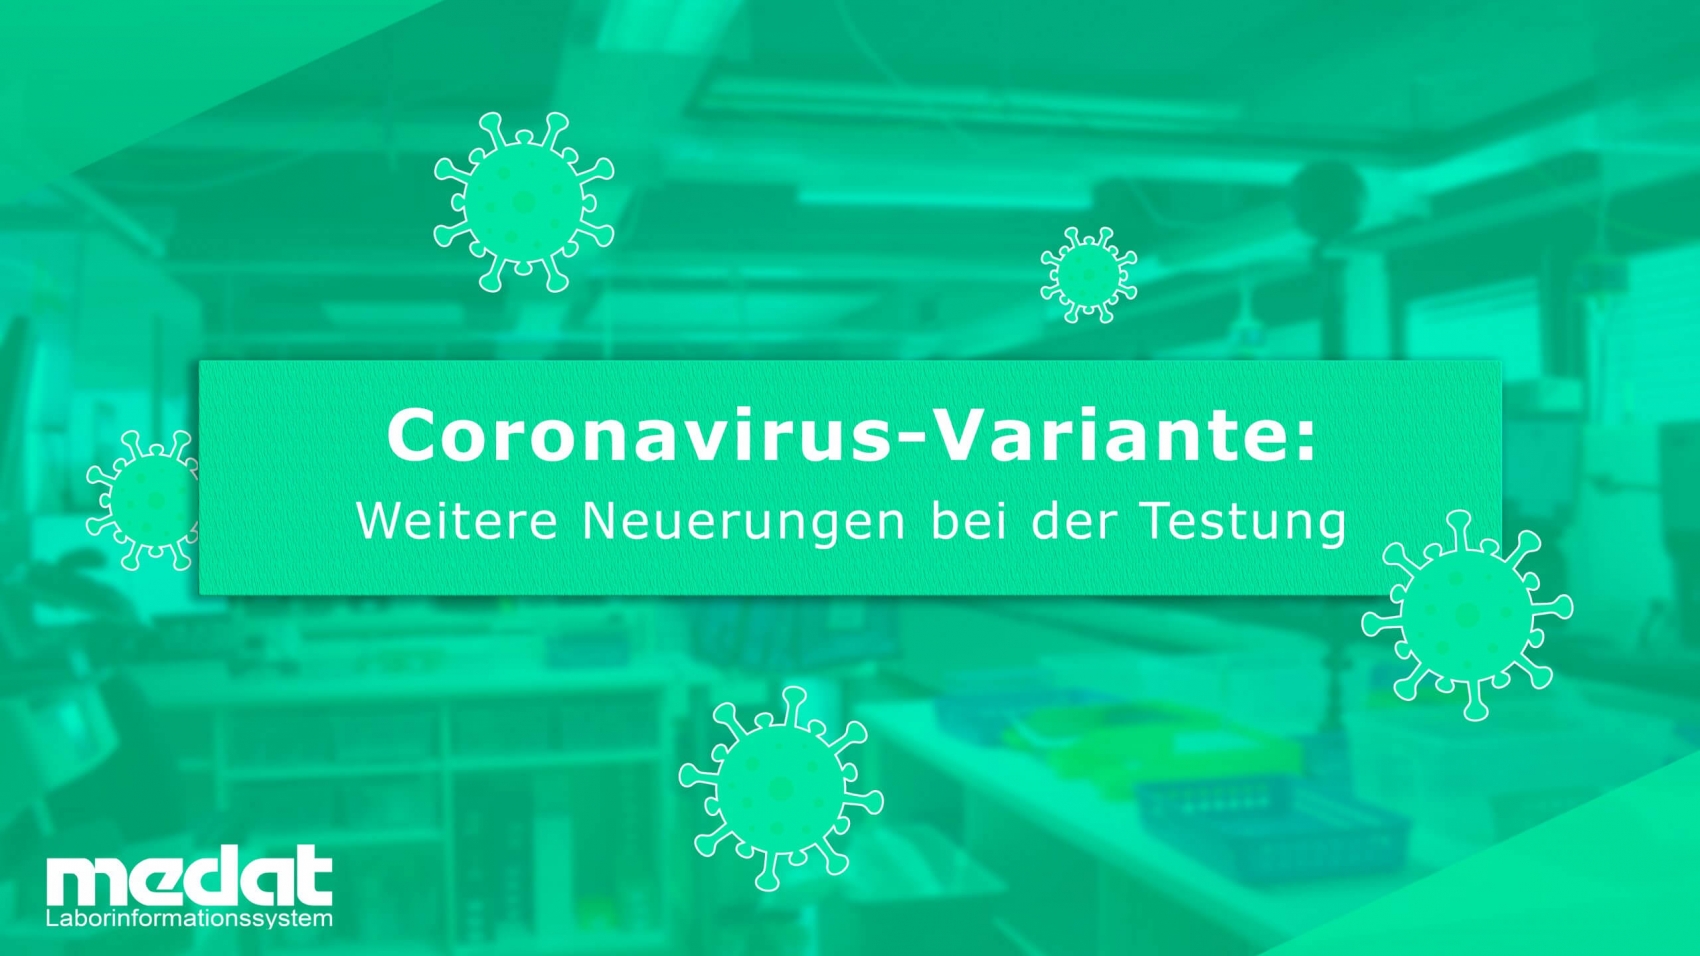 Im Bild befindet sich in der Mitte der Text "Coronavirus-Variante: Weitere Neuerungen bei der Testung". Zudem sind Symbole zu sehen, die das Virus darstellen und im Hintergrund ein Foto eines Labors. Alles wird in einem auffälligen grün dargestellt.